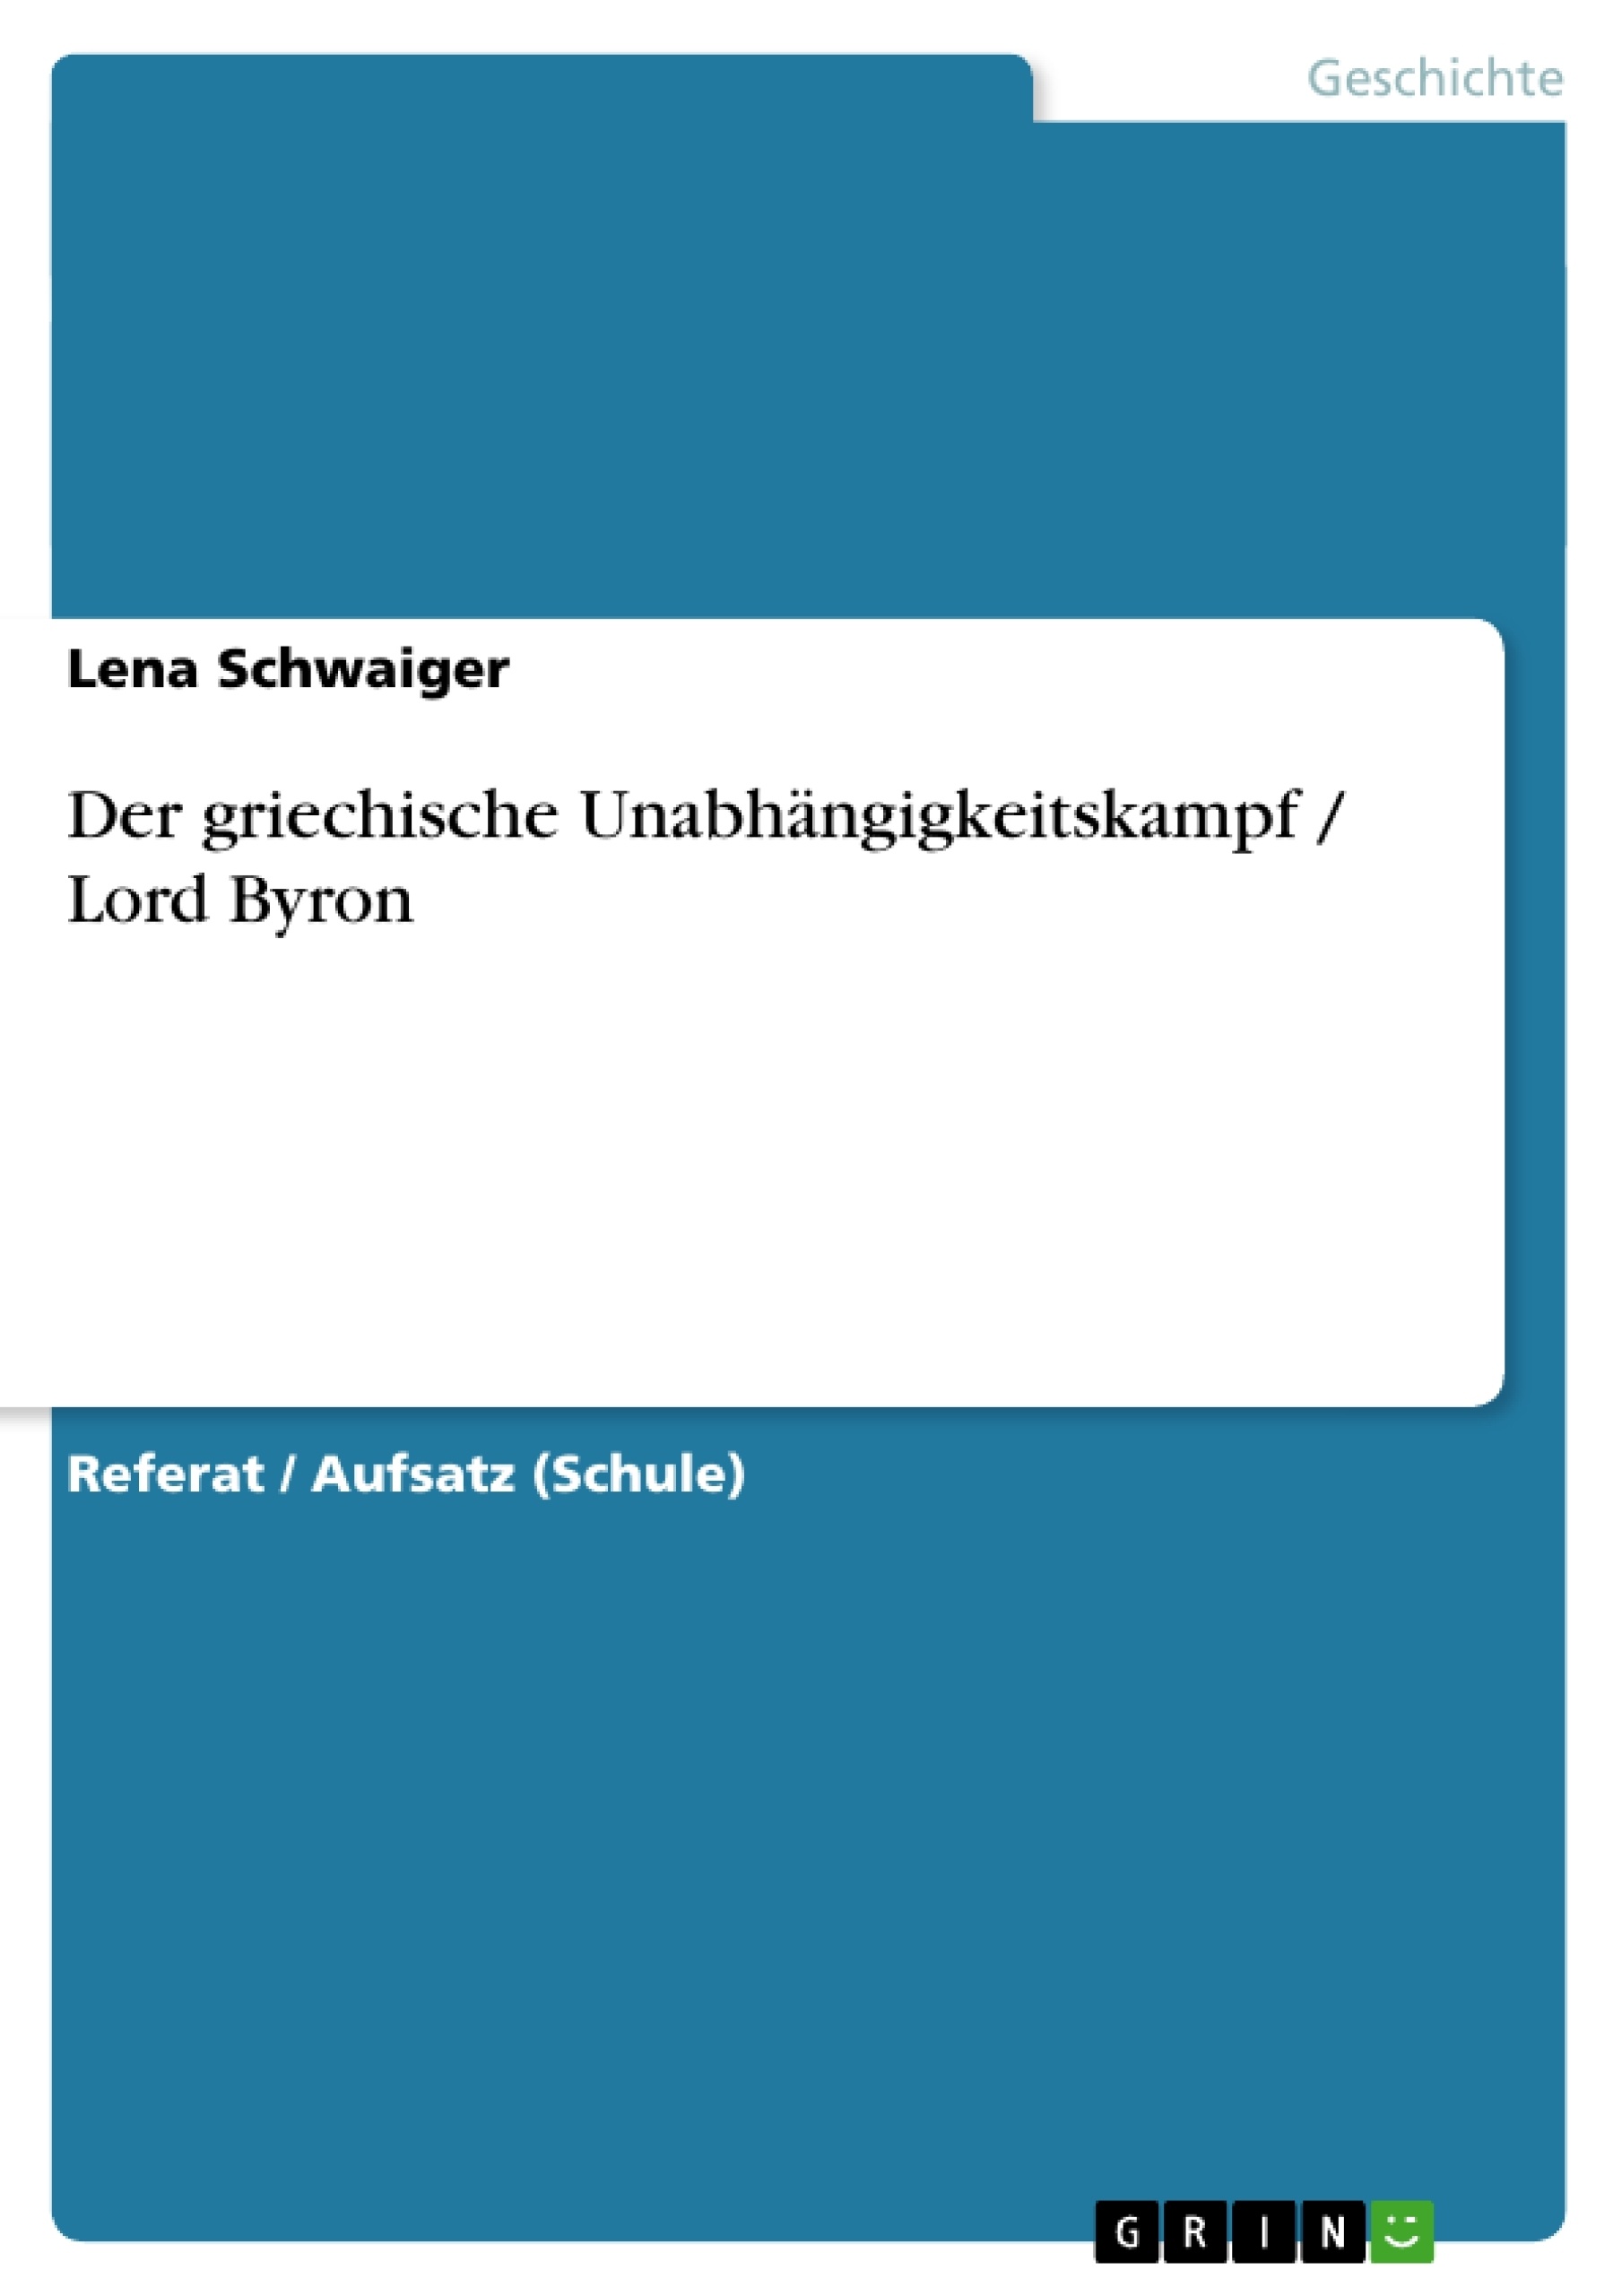 Título: Der griechische Unabhängigkeitskampf / Lord Byron